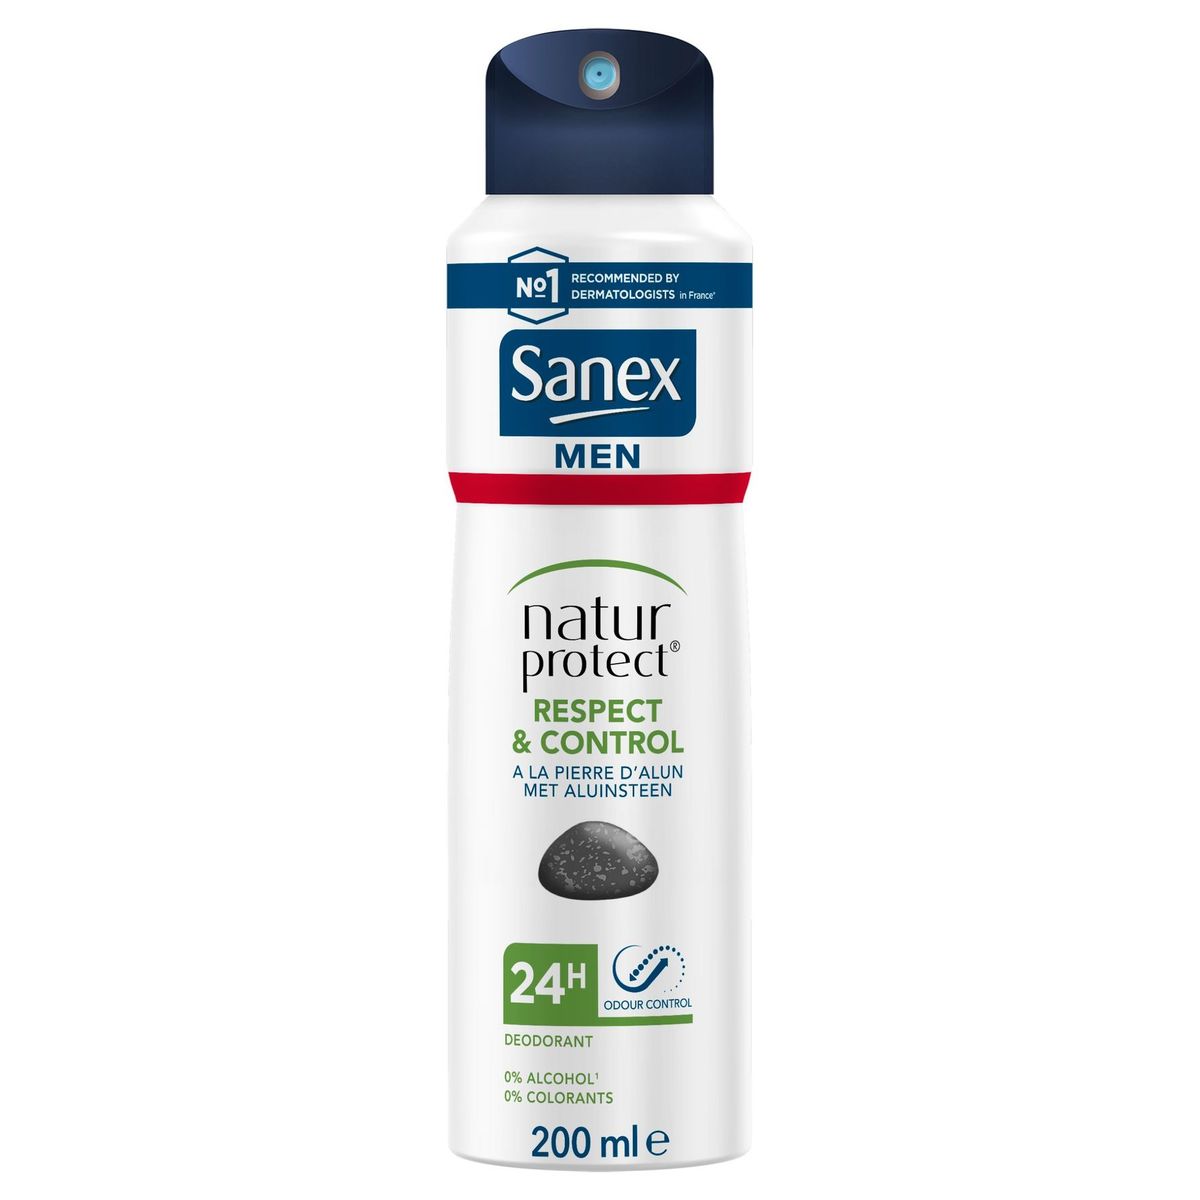 Sanex Men Natur Protect Respect & Control deodorant spray - 200ml